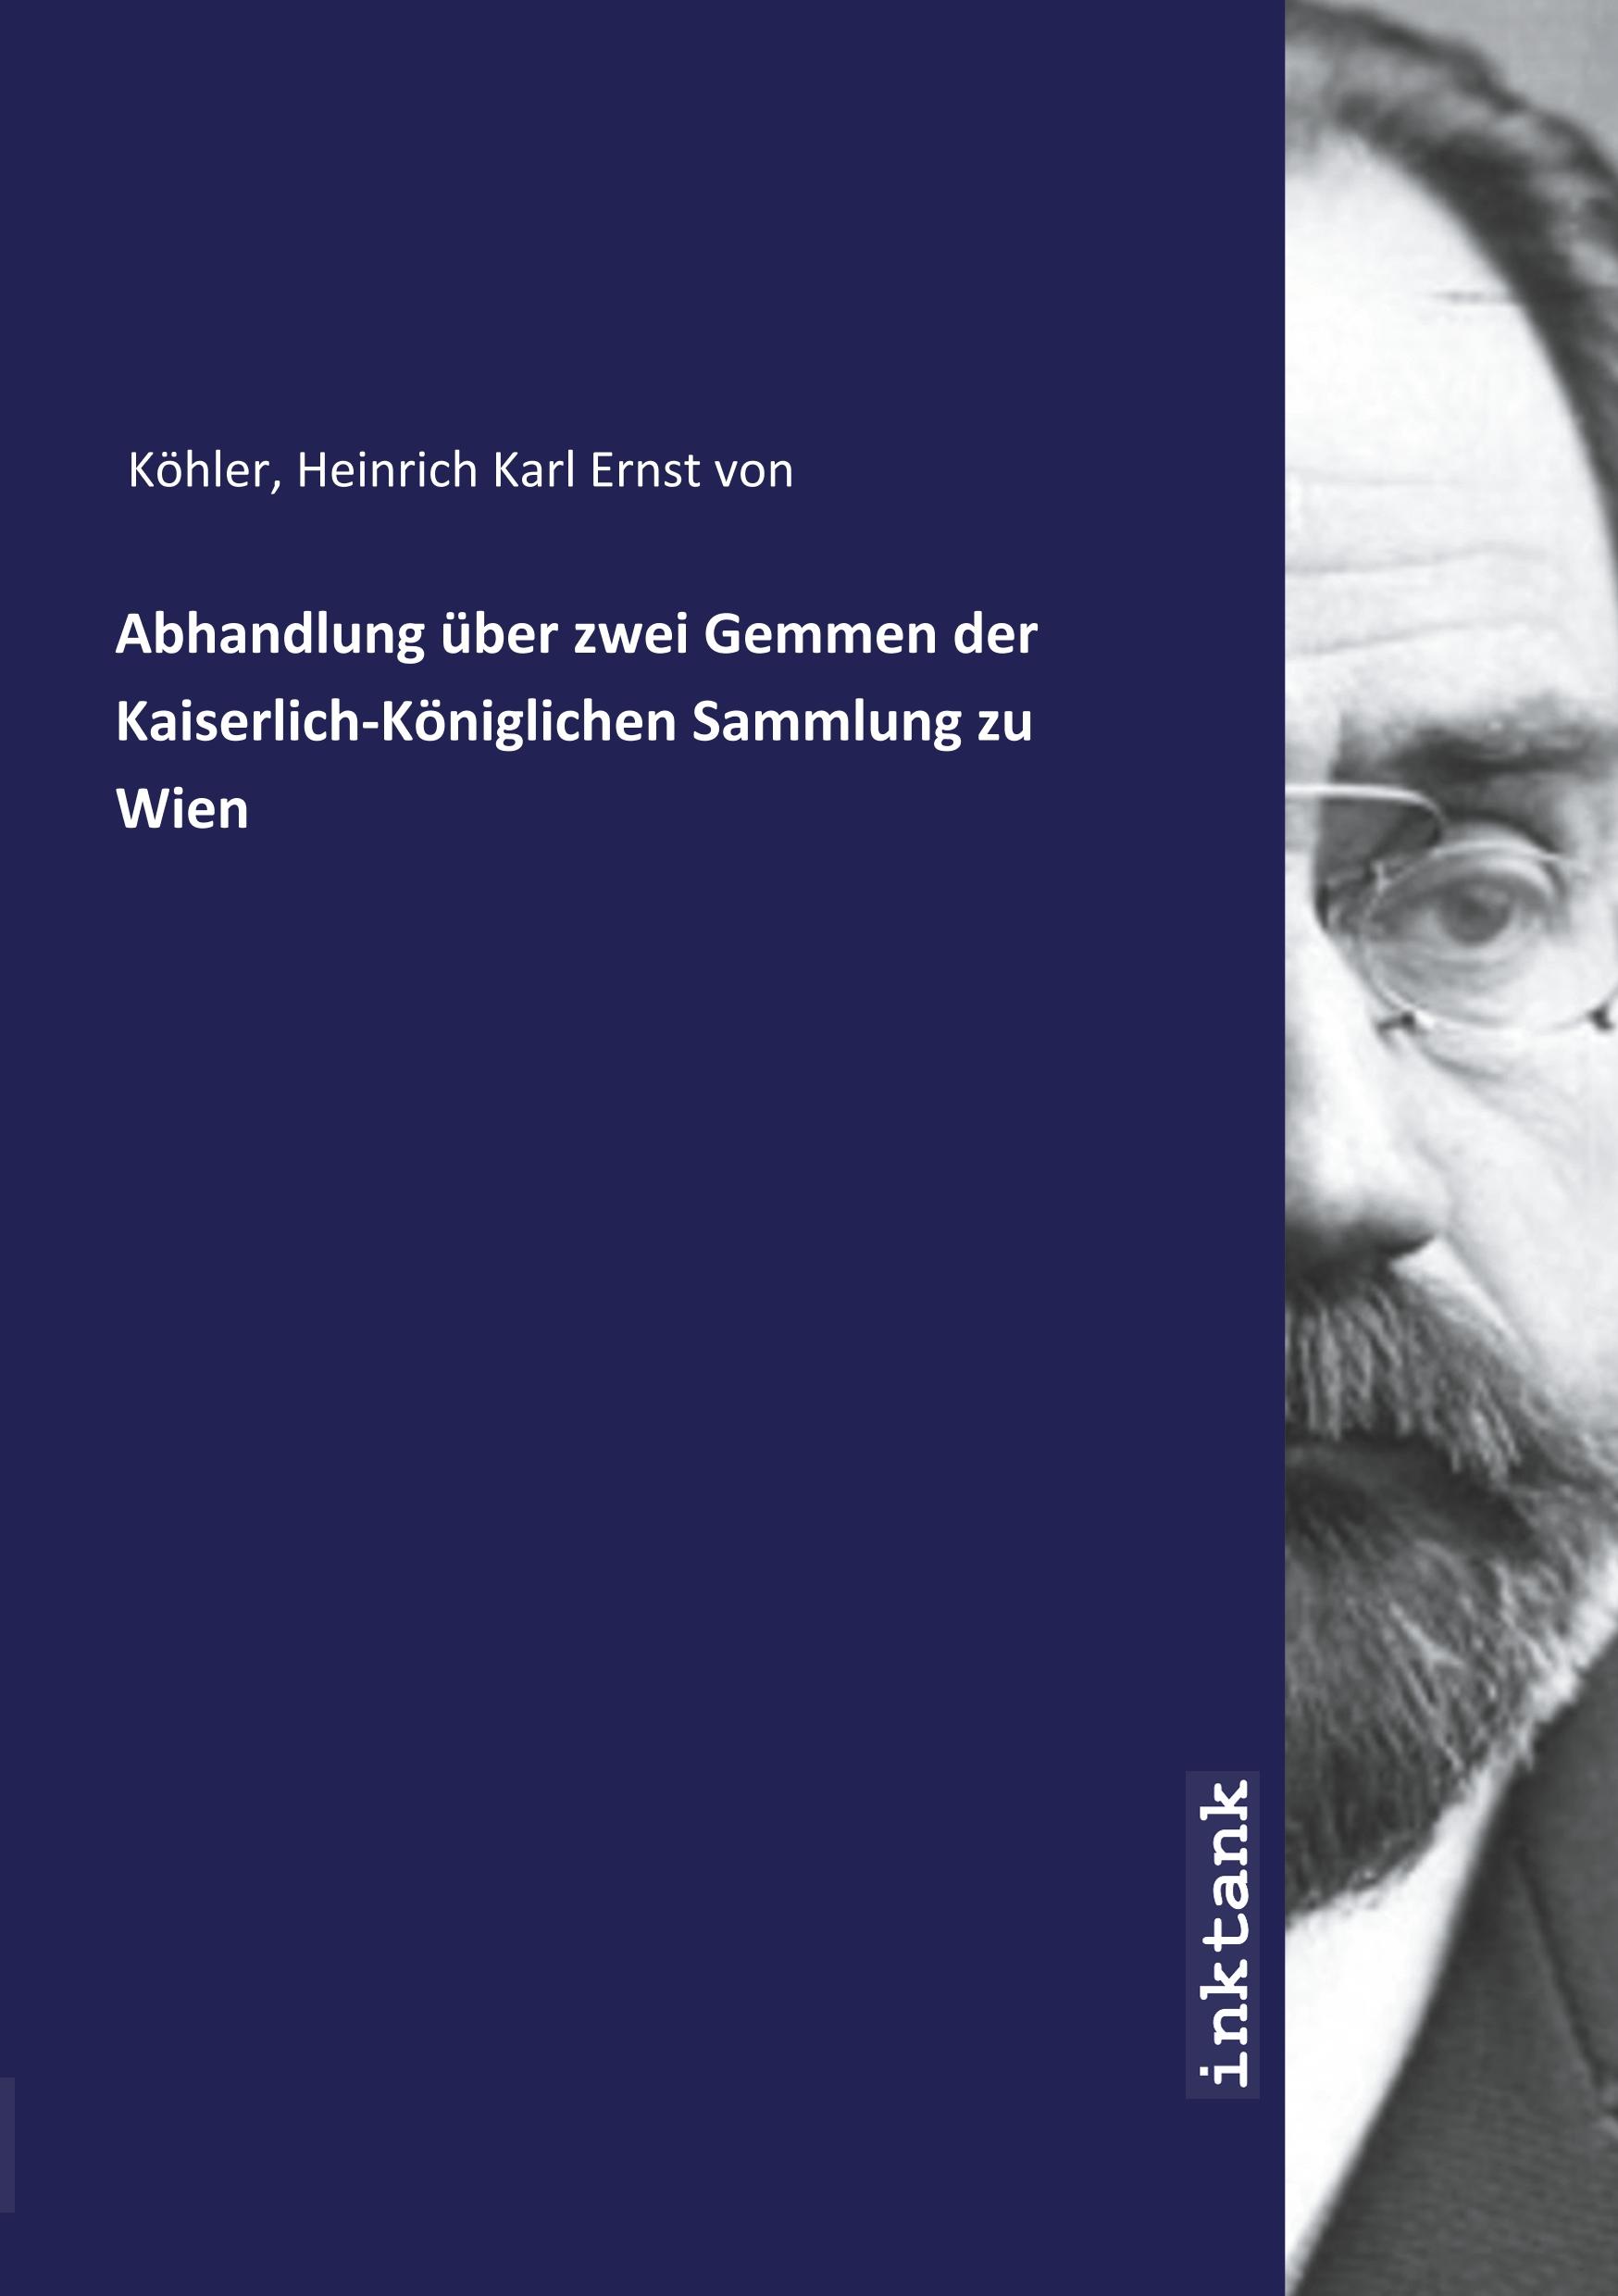 Abhandlung ueber zwei Gemmen der Kaiserlich-Koniglichen Sammlung zu Wien - Kohler, Heinrich Karl Ernst von